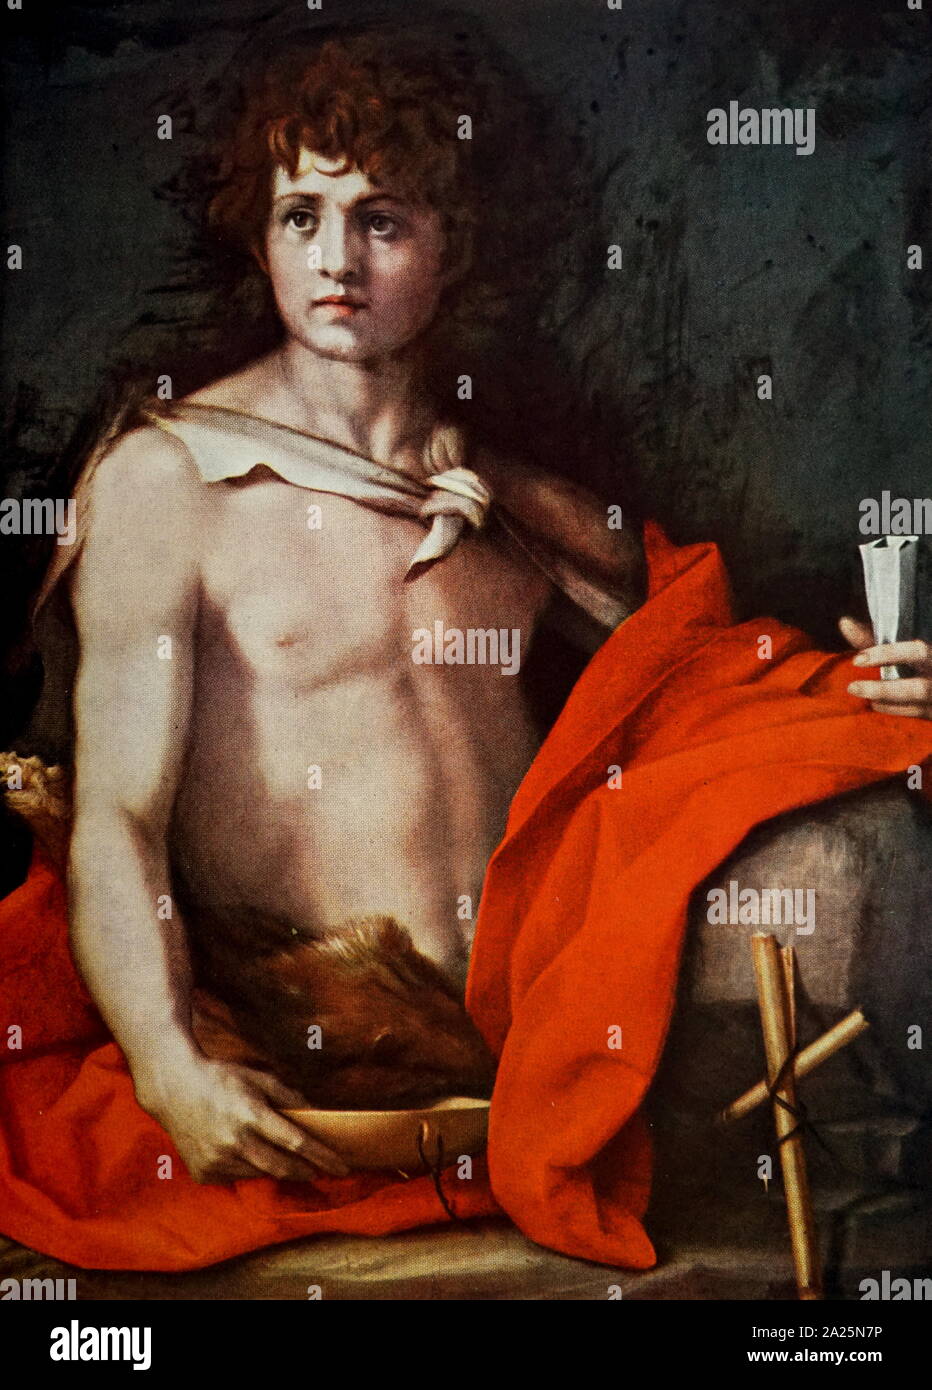 Dipinto di San Giovanni Battista di Andrea del Sarto. Andrea del Sarto (1486-1530) un pittore italiano. Foto Stock